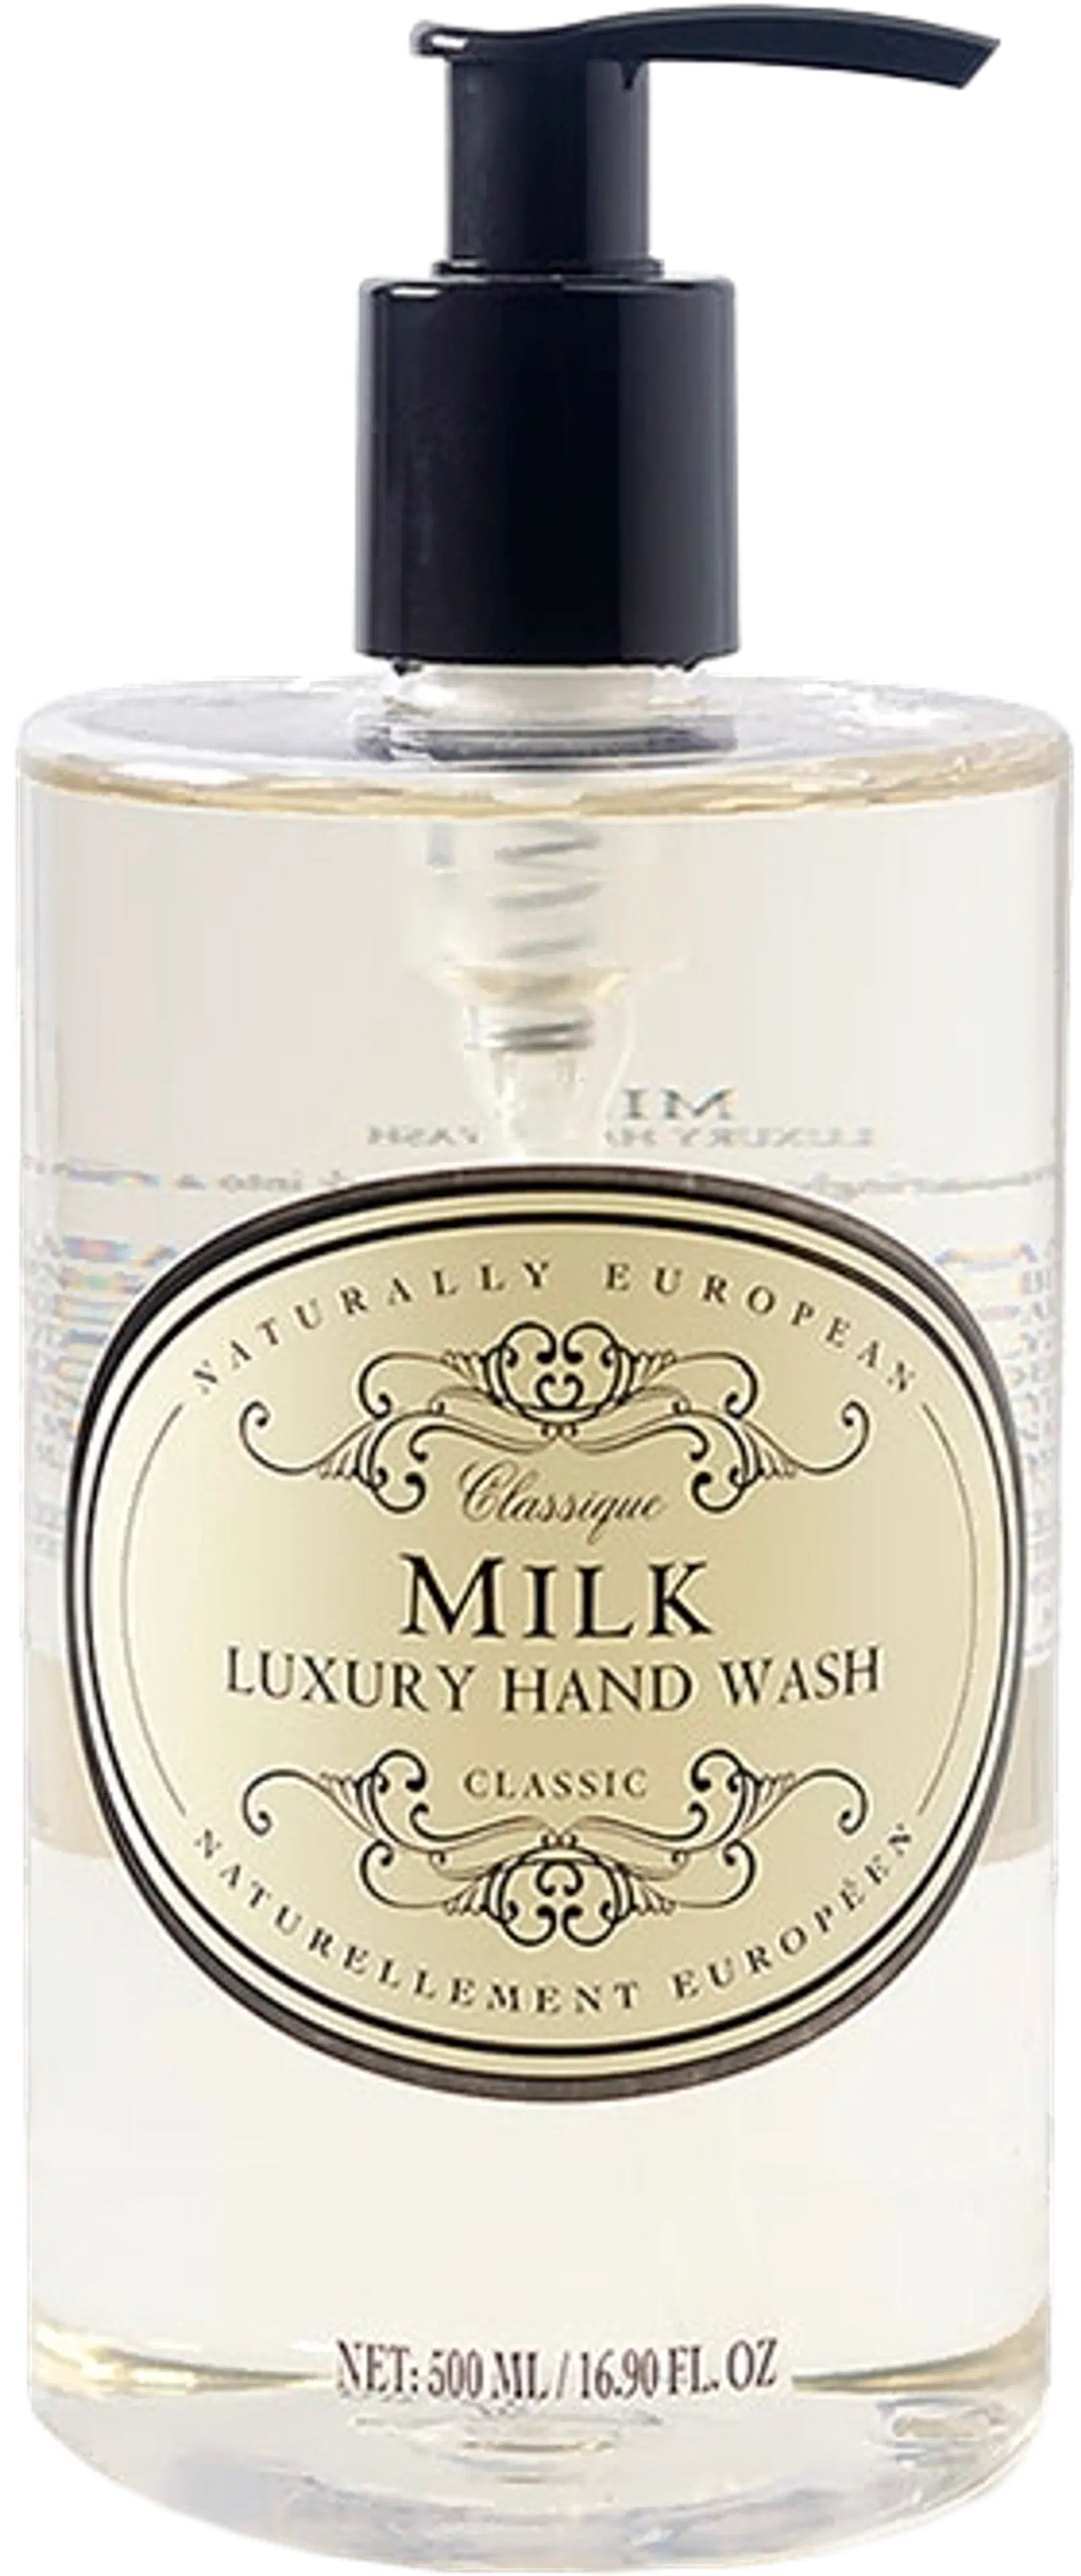 Naturally European Milk Cotton Luxury Hand Wash käsisaippua 500 ml